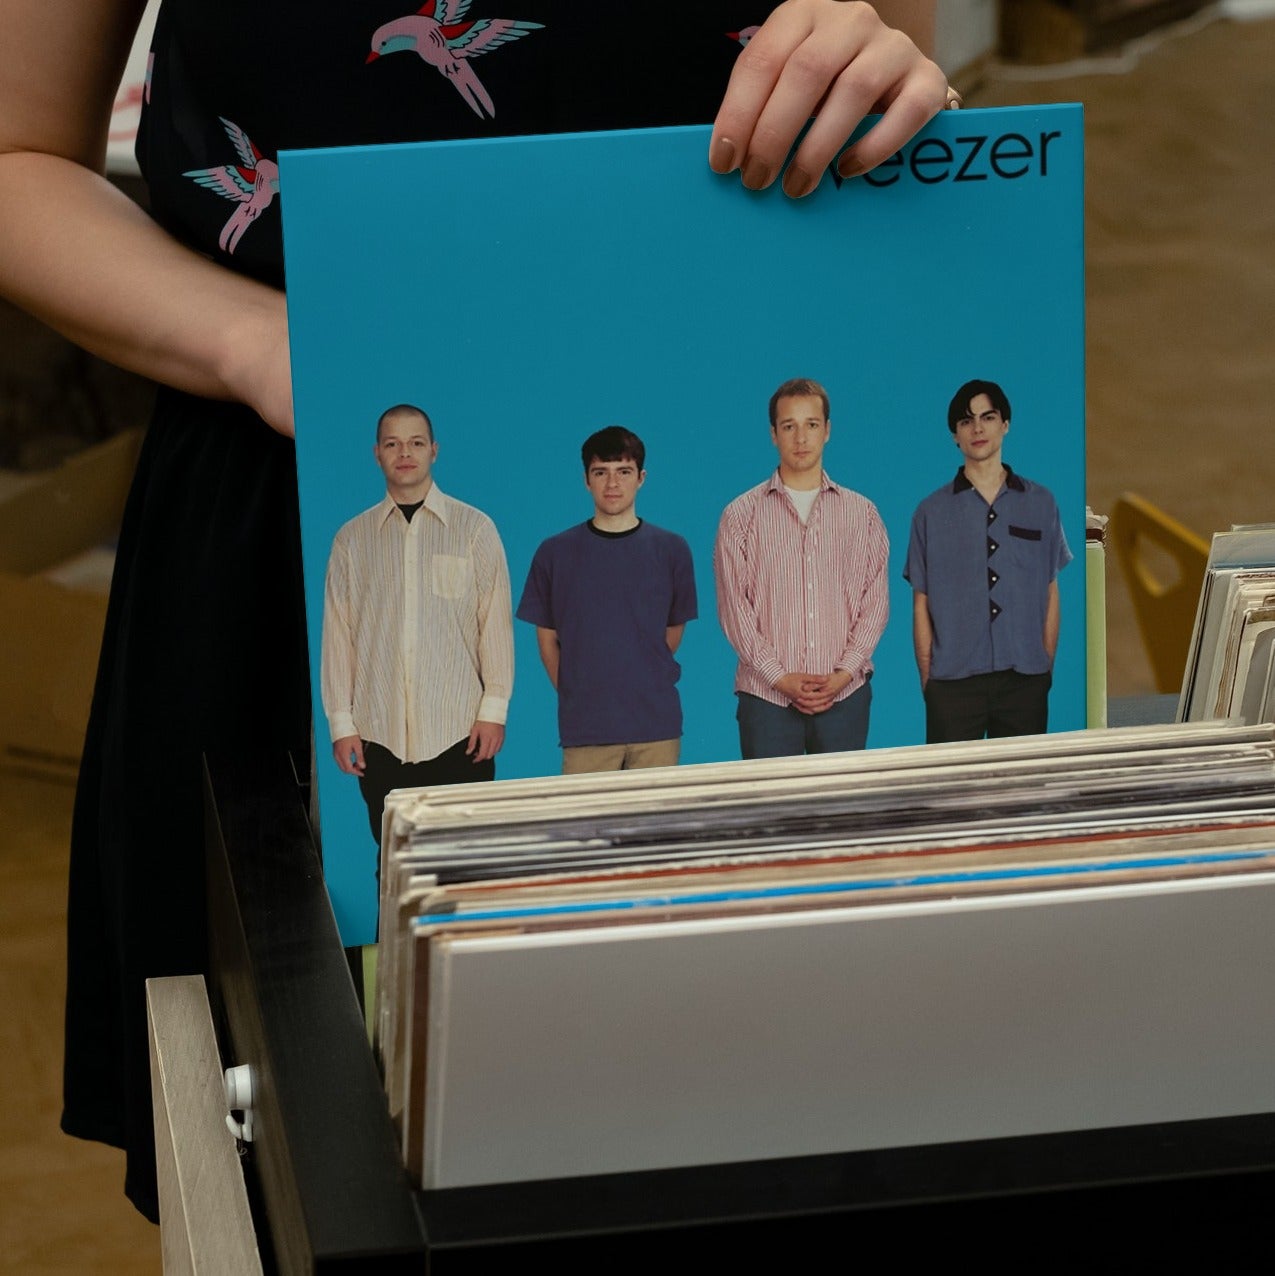 Weezer: Blue Album Vinyl LP